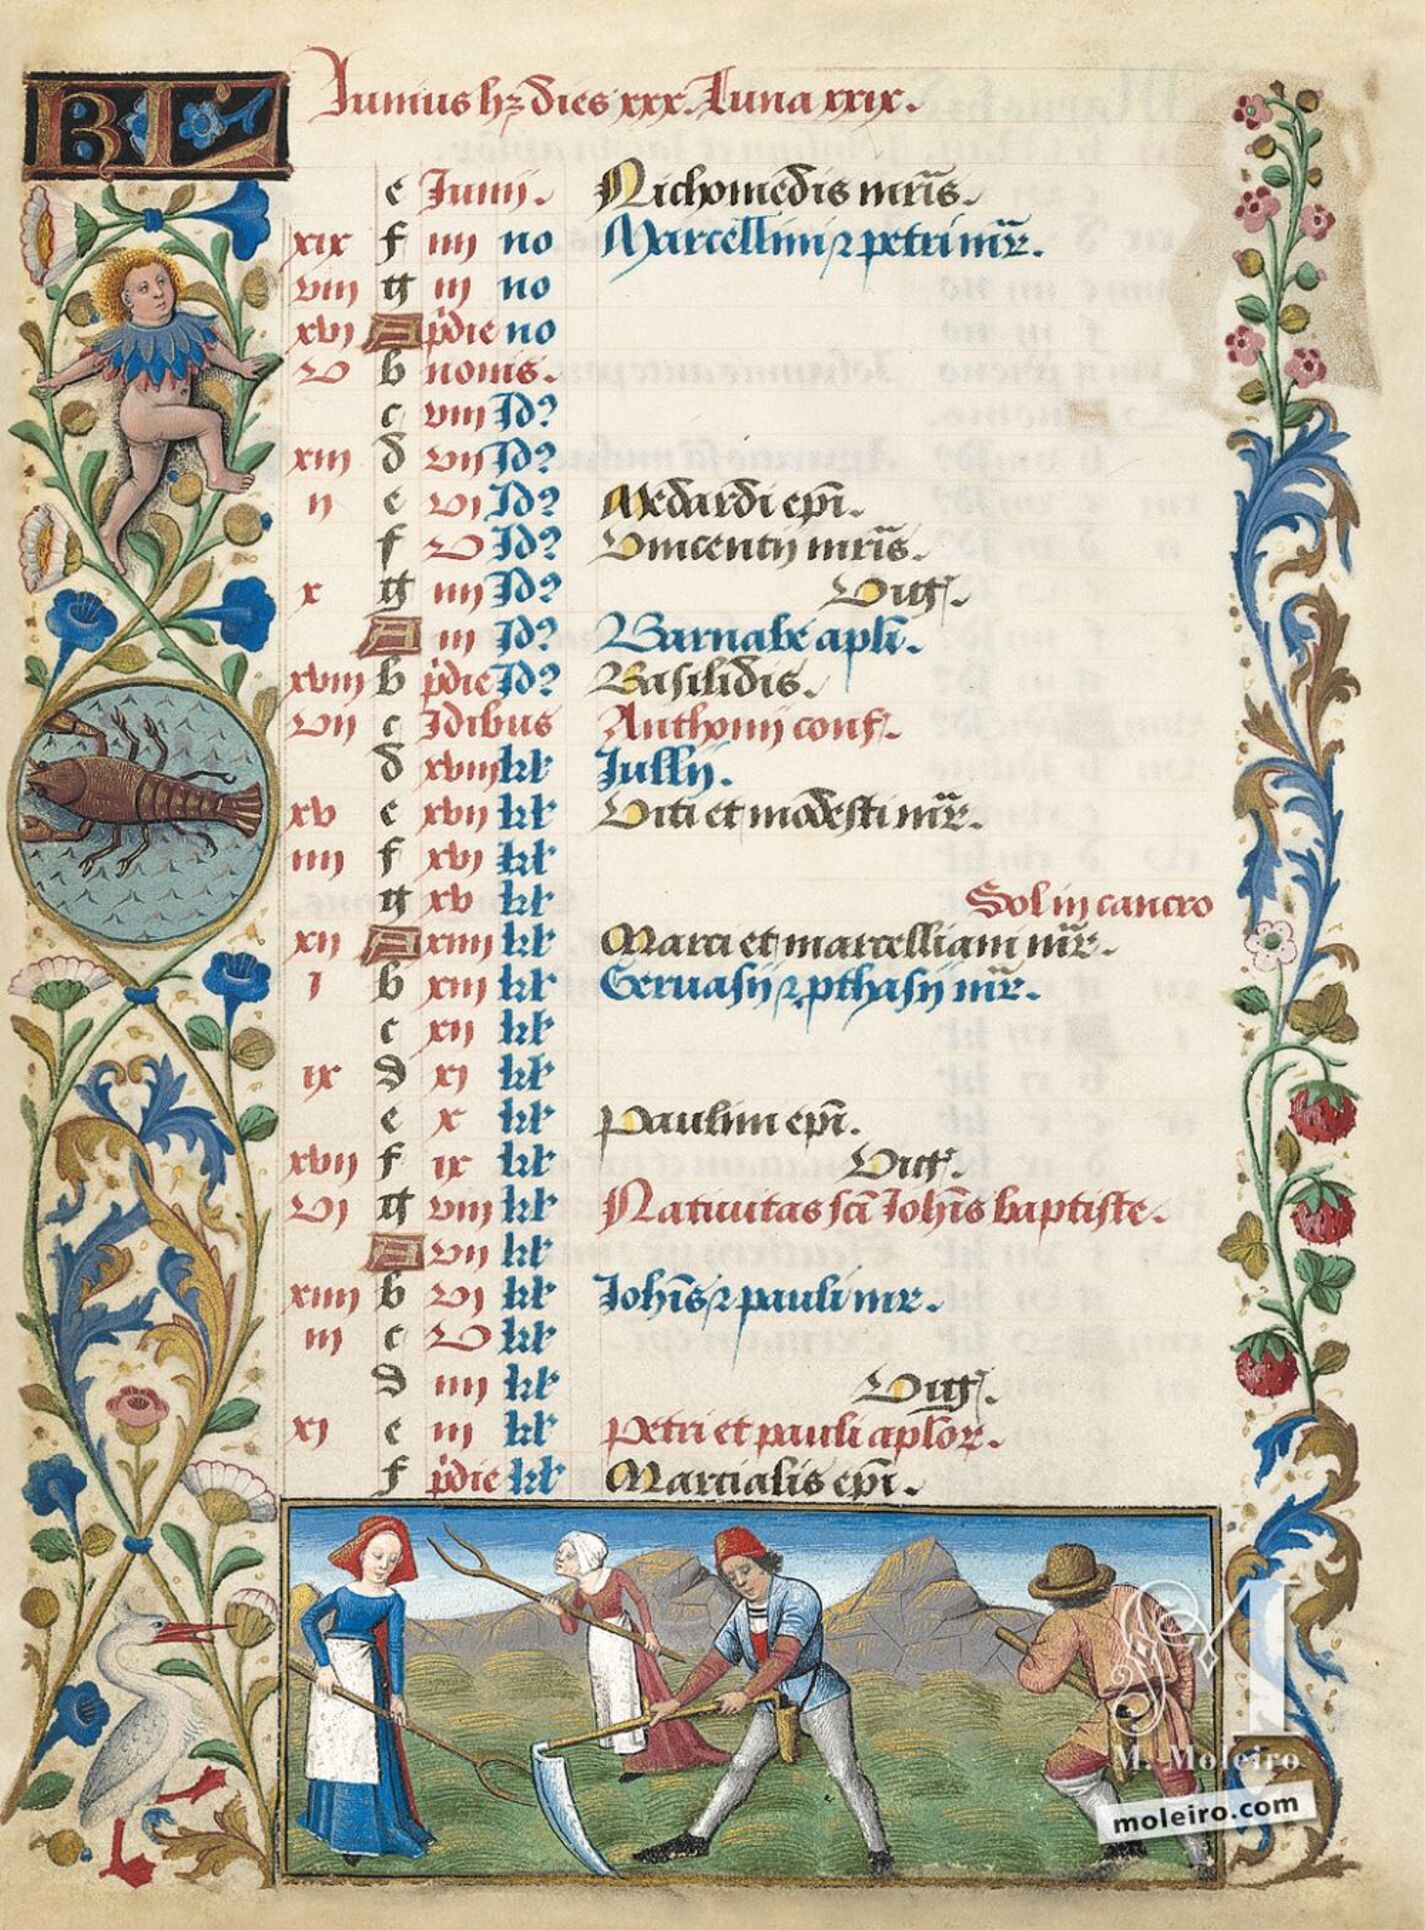 Calendario: junio (f. 3v)